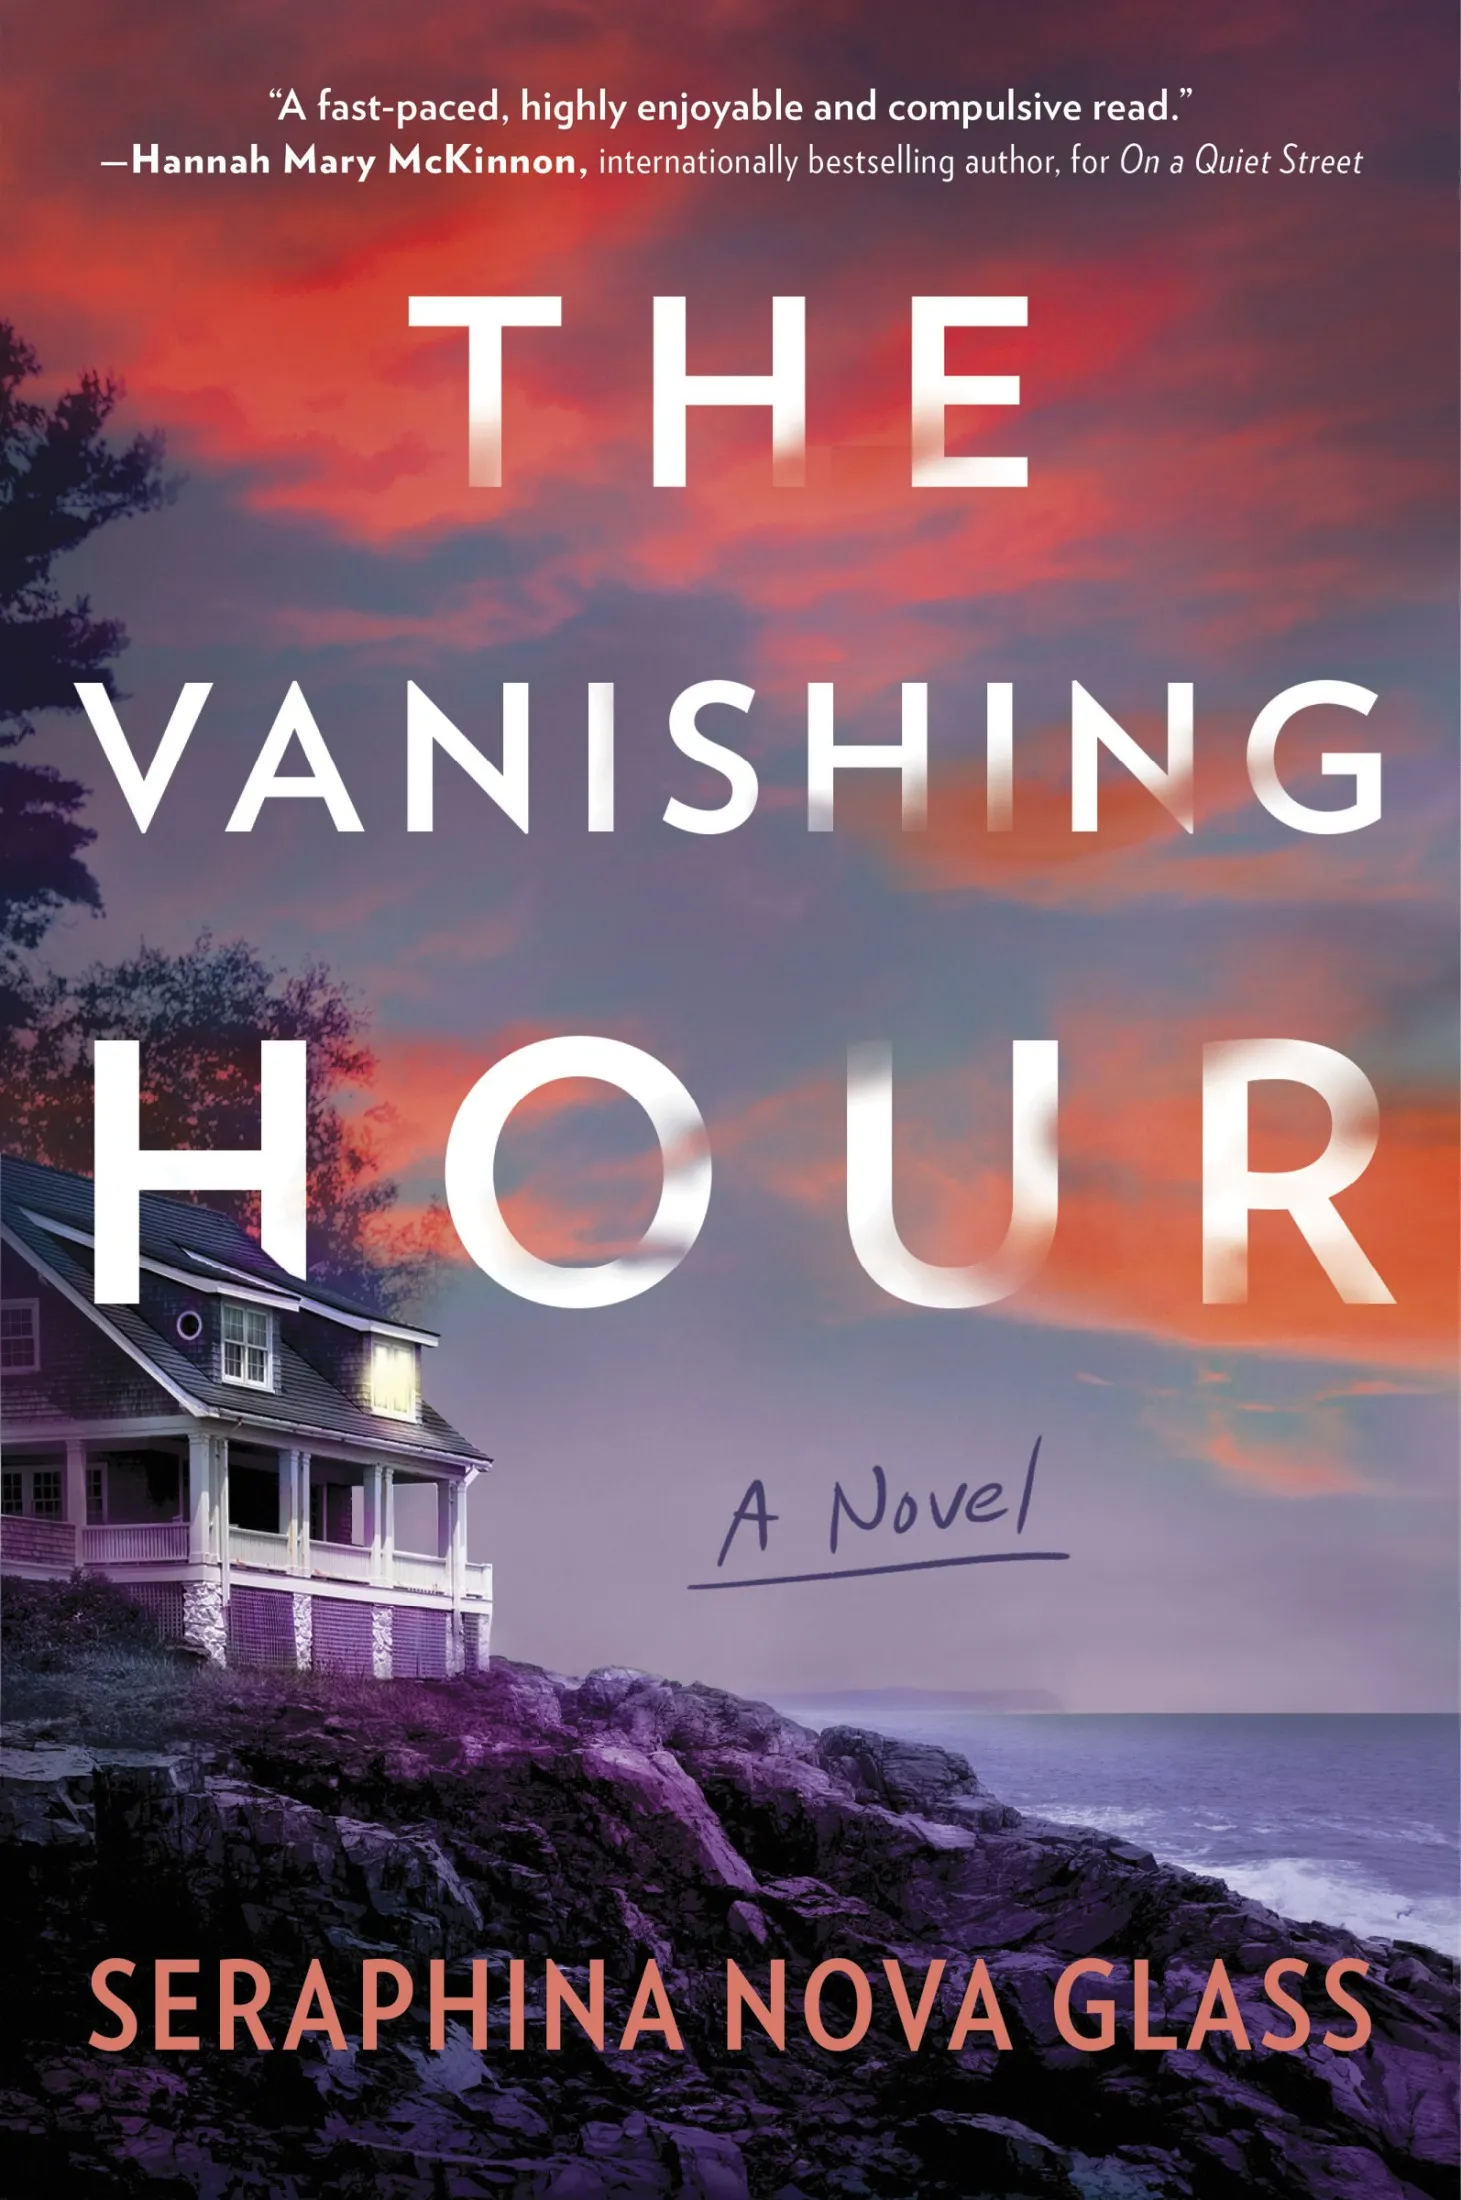 The Vanishing Hour